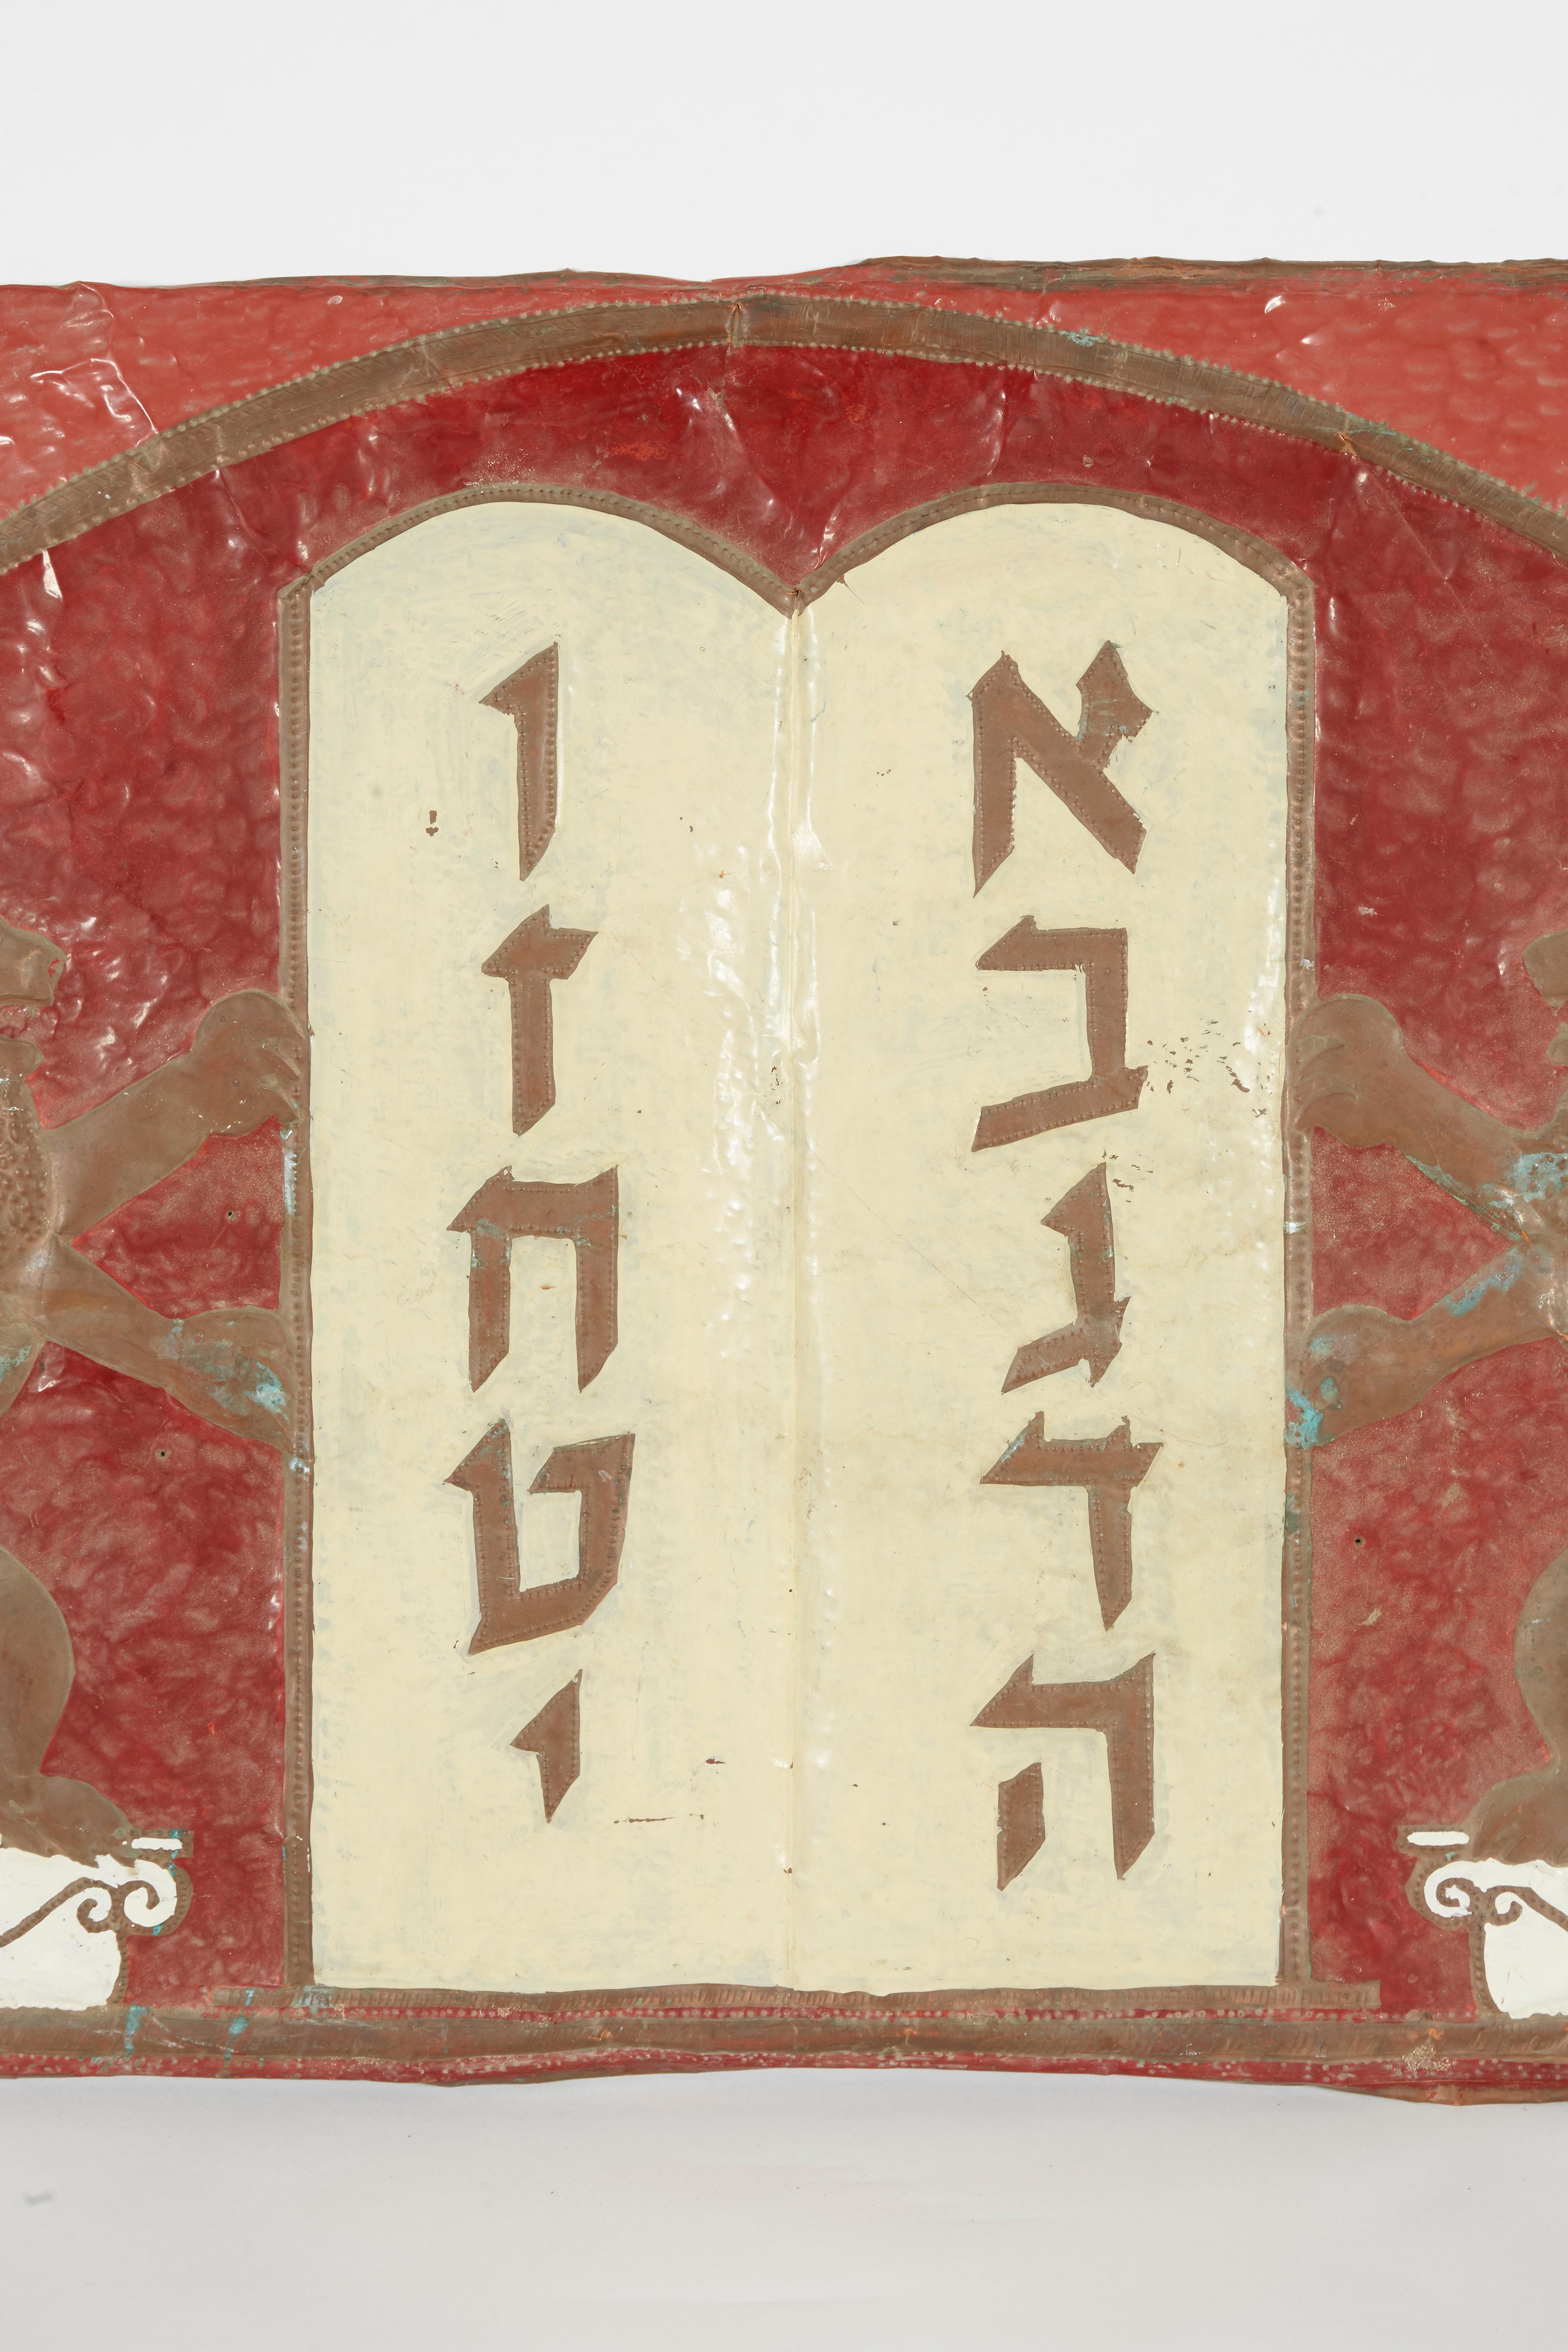 Handgehämmerter Synagogenschmuck aus Kupferblech zeigt den Dekalog (Zehn Gebote), flankiert von zügellosen Löwen, die auf einer Säule stehen, eingerahmt von einem Bogen mit zwei Davidsternen an den oberen Ecken.

 